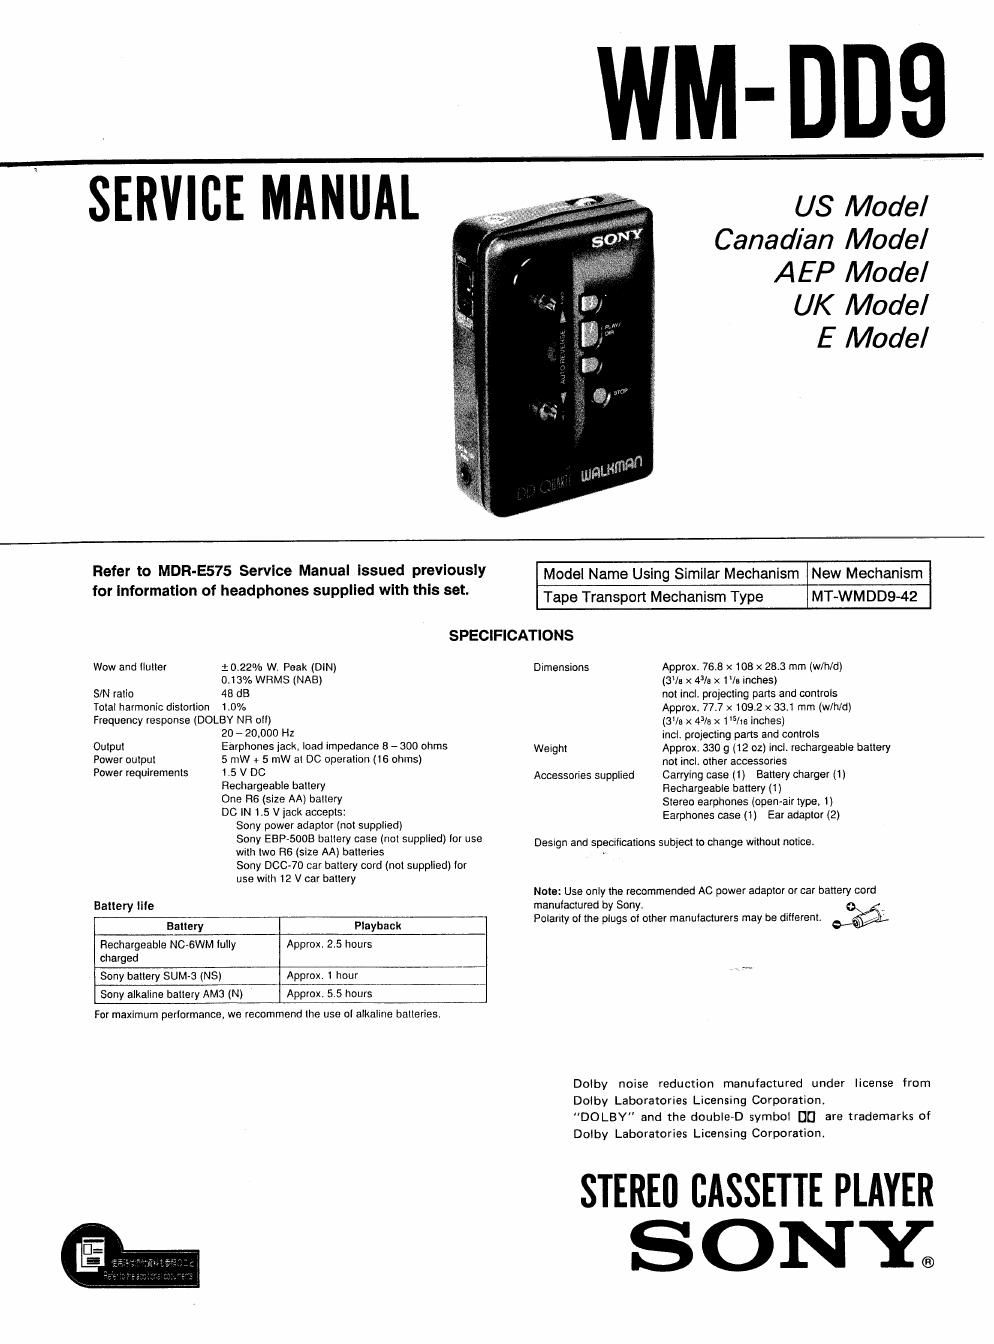 sony wm dd 9 service manual